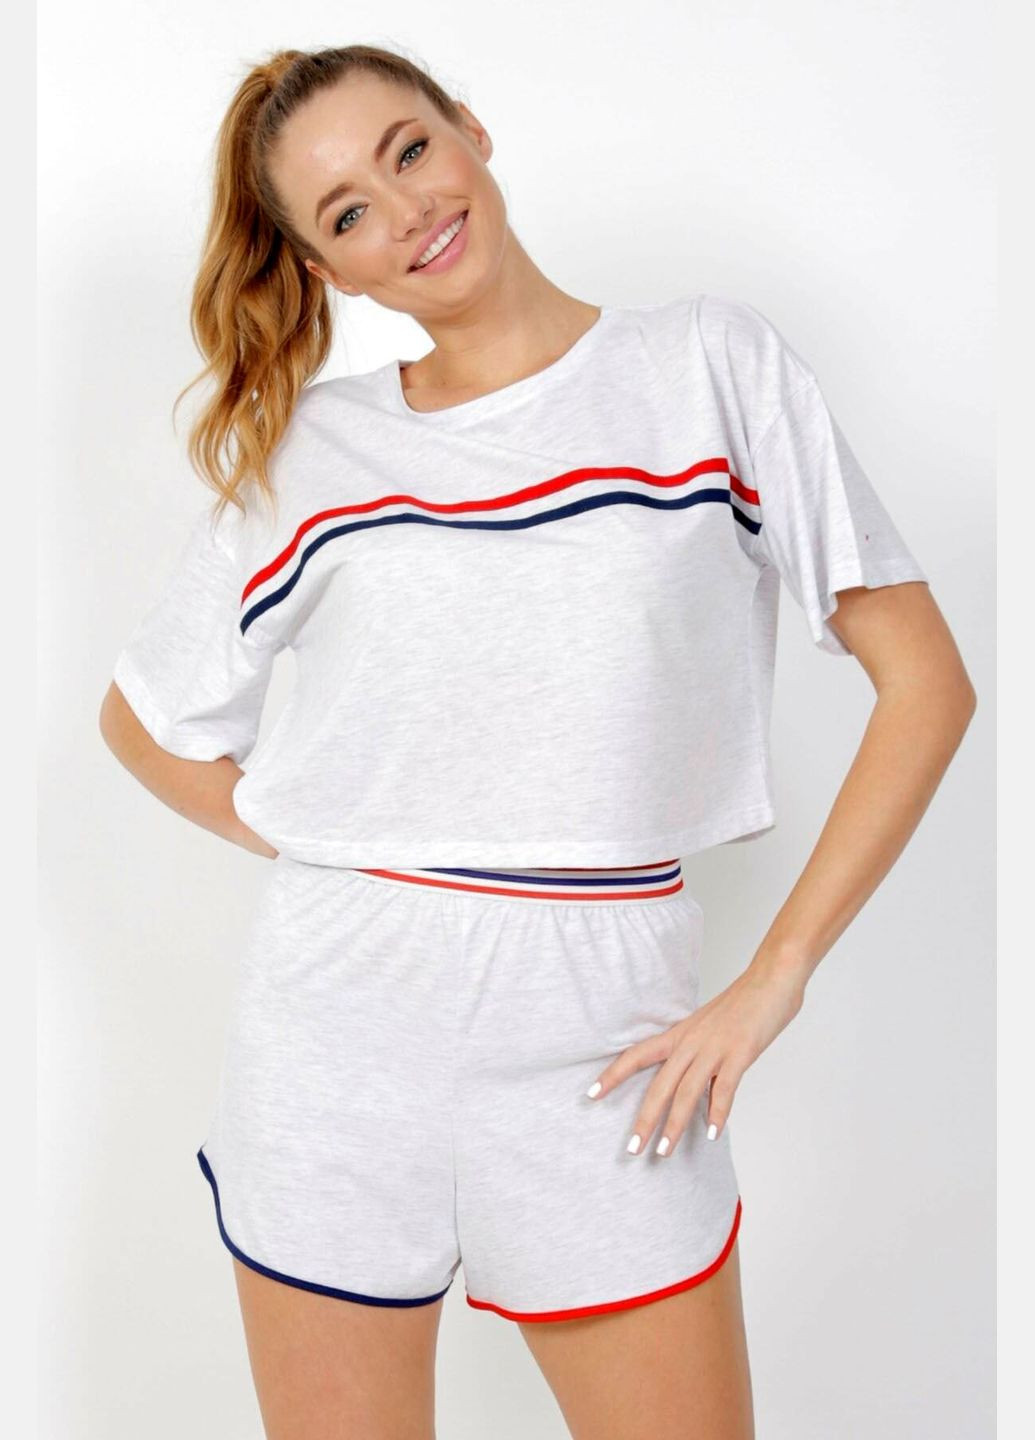 Светло-серая всесезон пижама женская ( футболка, шорты) футболка + шорты Vienetta